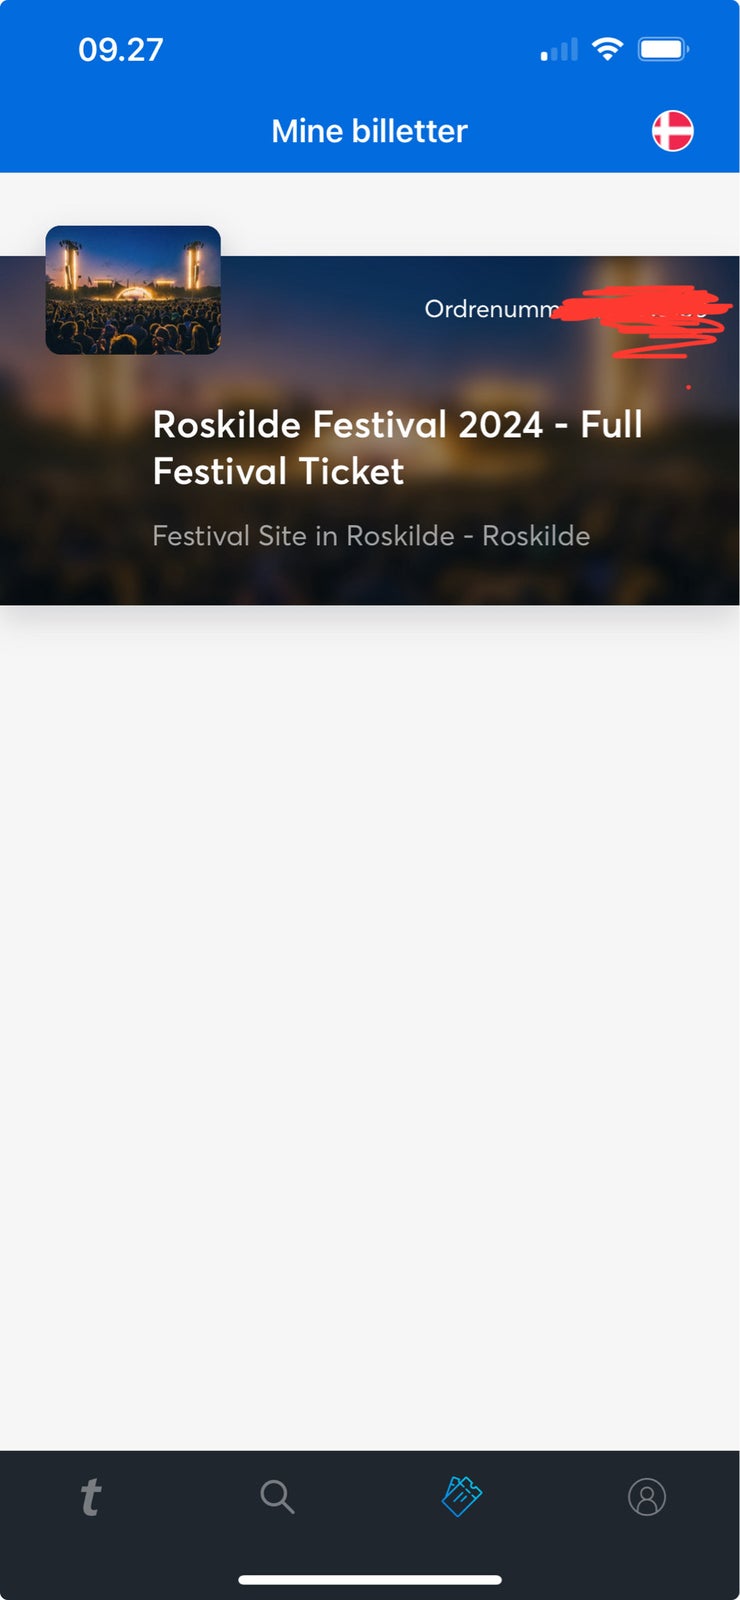 Roskilde Festival 2024 - Full Festival Ticket